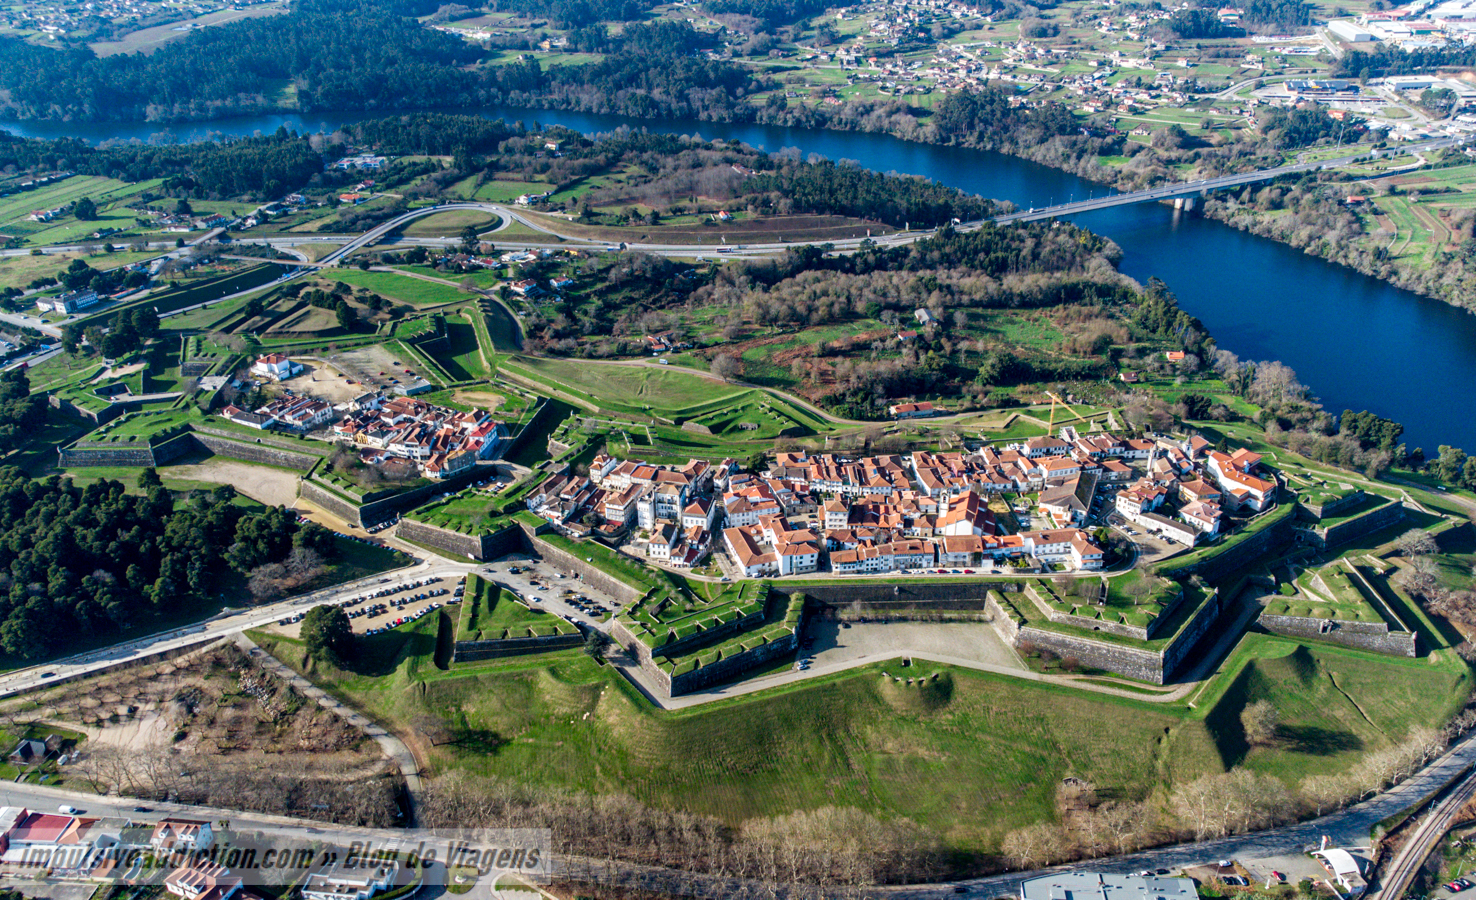 Fortress of Valença on a day trip from Porto